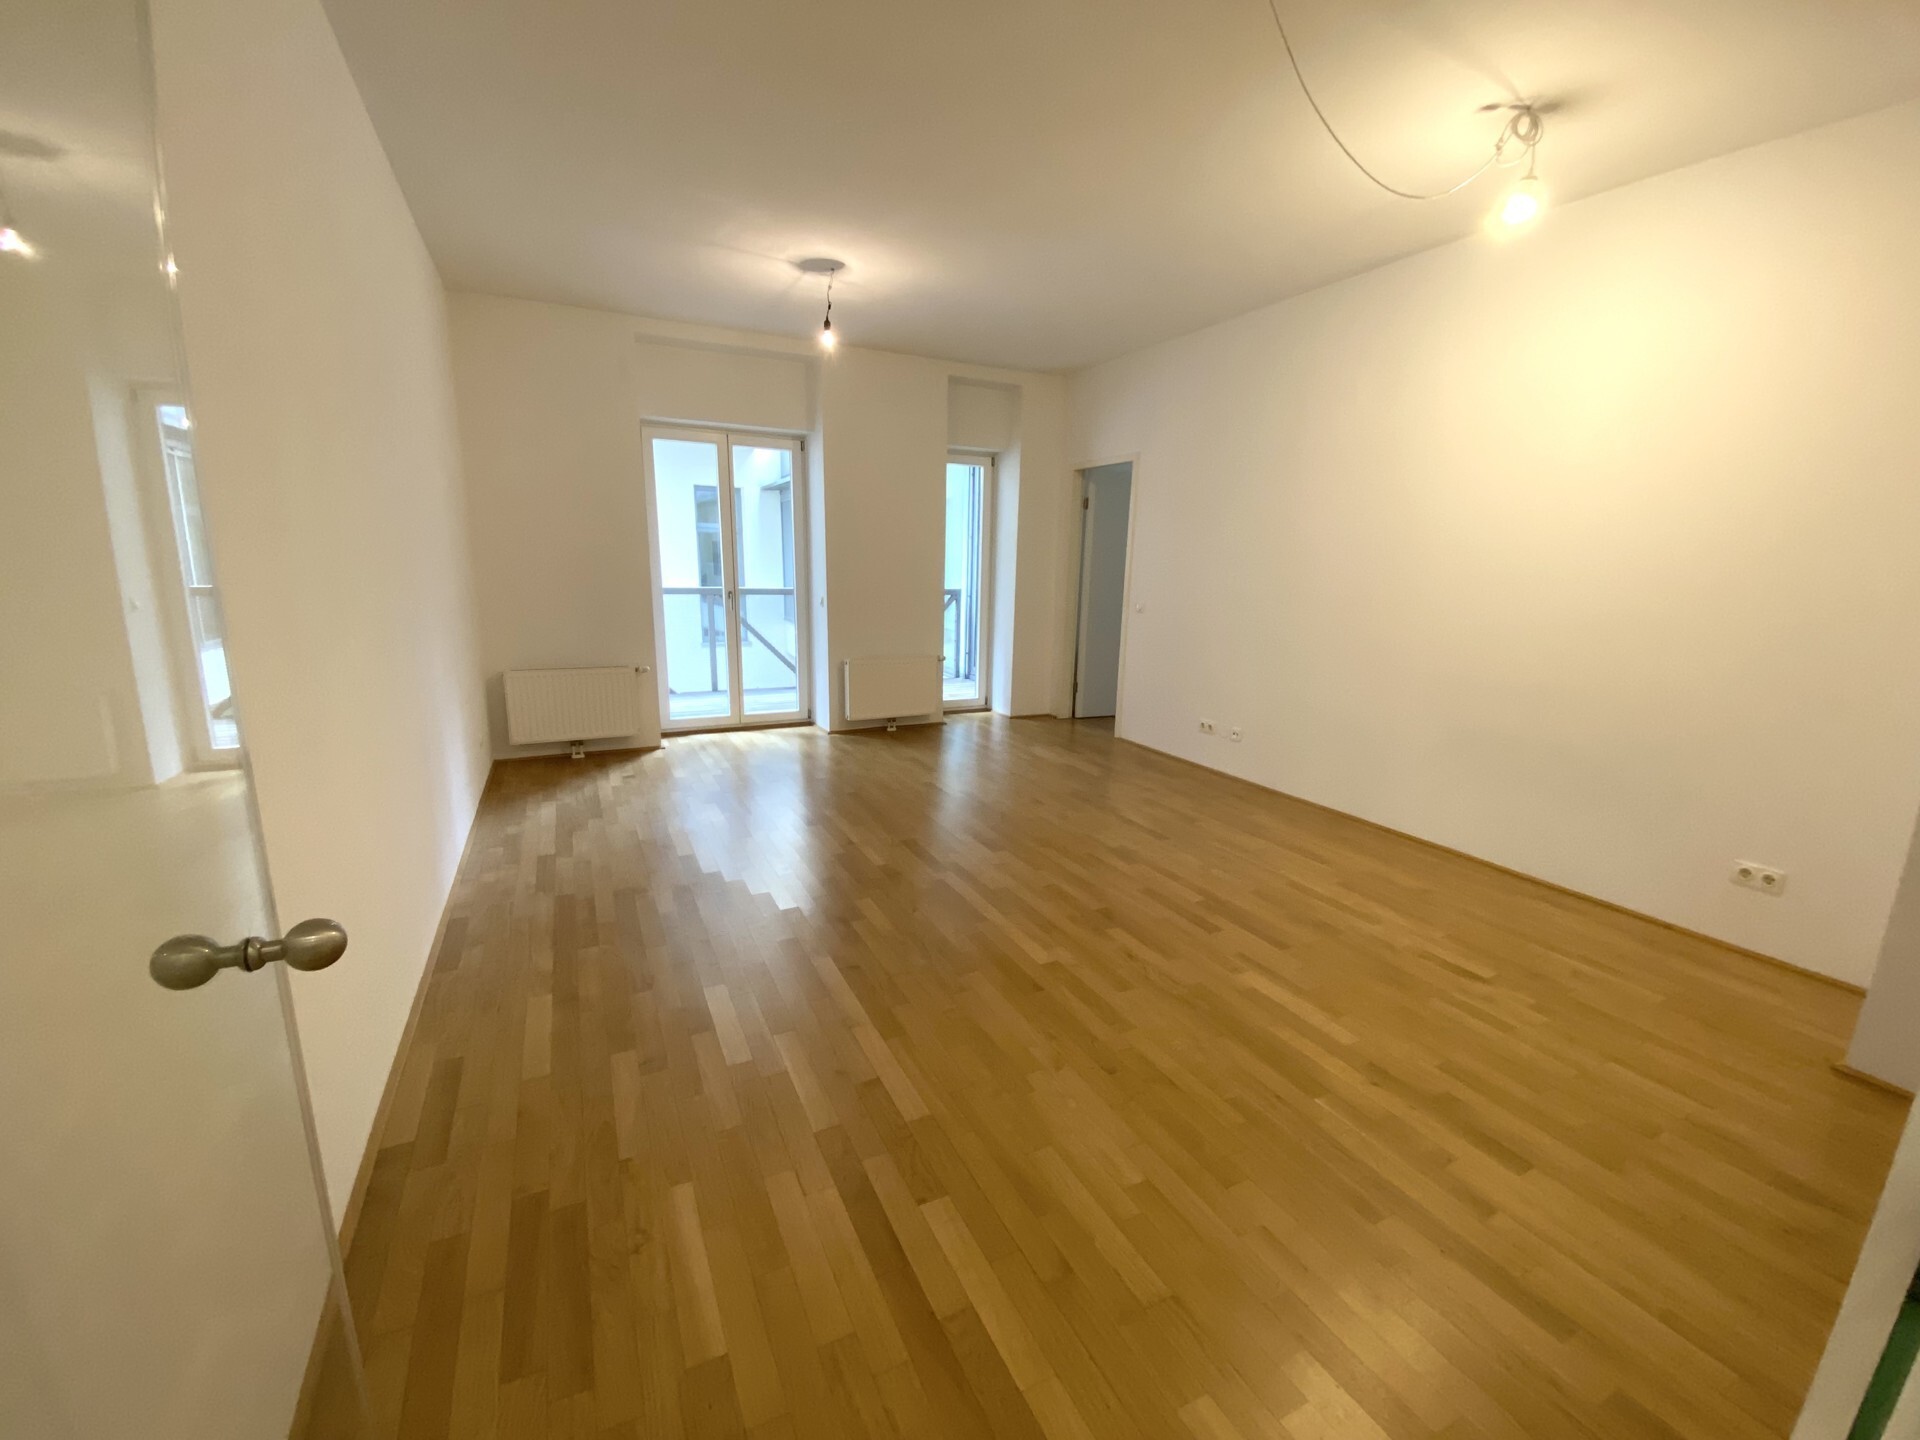 3-Zimmer-Wohnung mit Loggia in zentralster Lage direkt an der Rotenturmstraße zu mieten in 1010 Wien